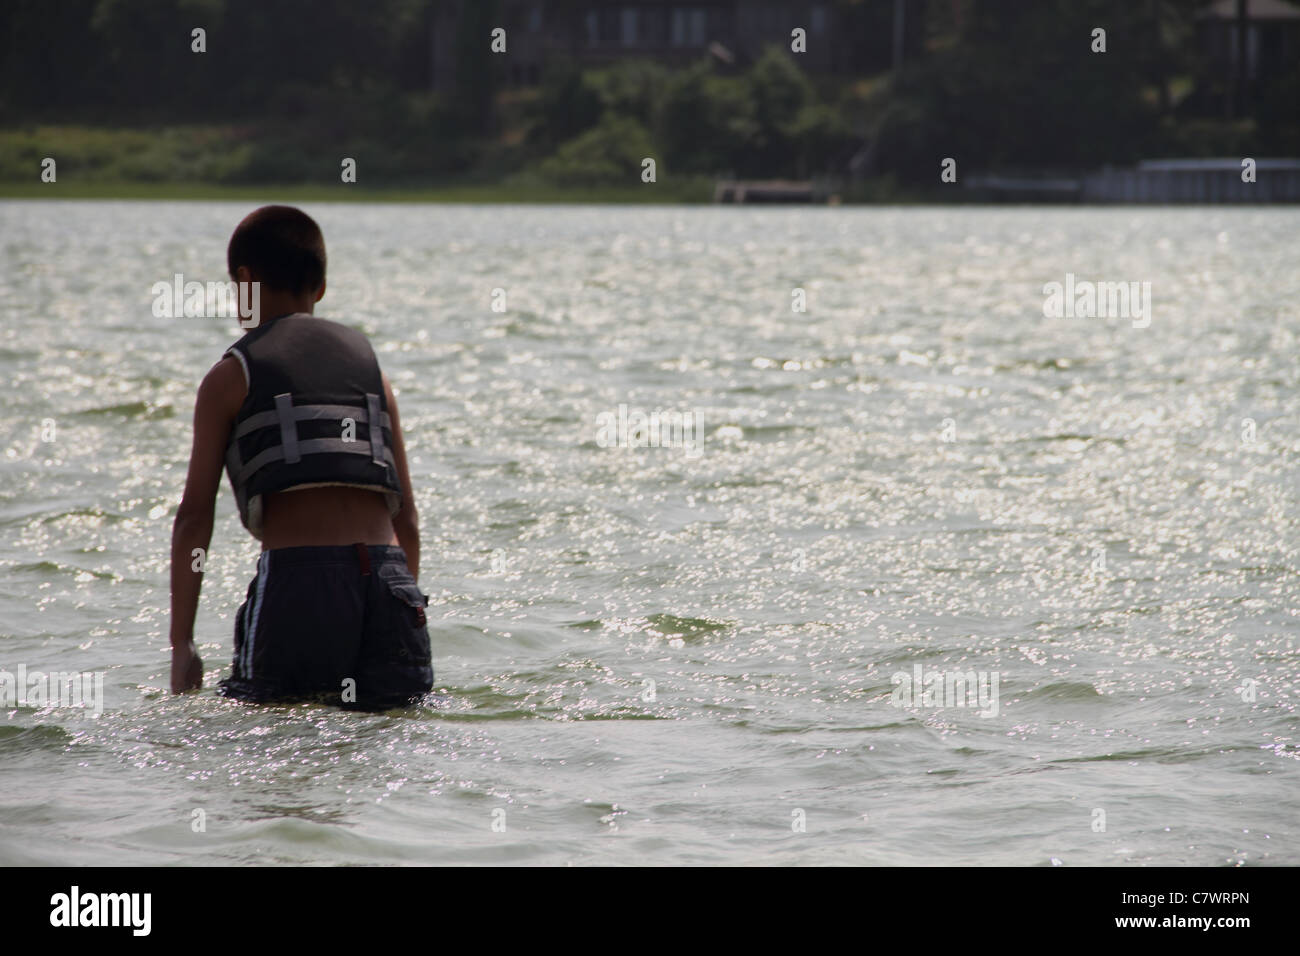 sandbar walking through water Hispanic boy bathing suit lake Stock Photo